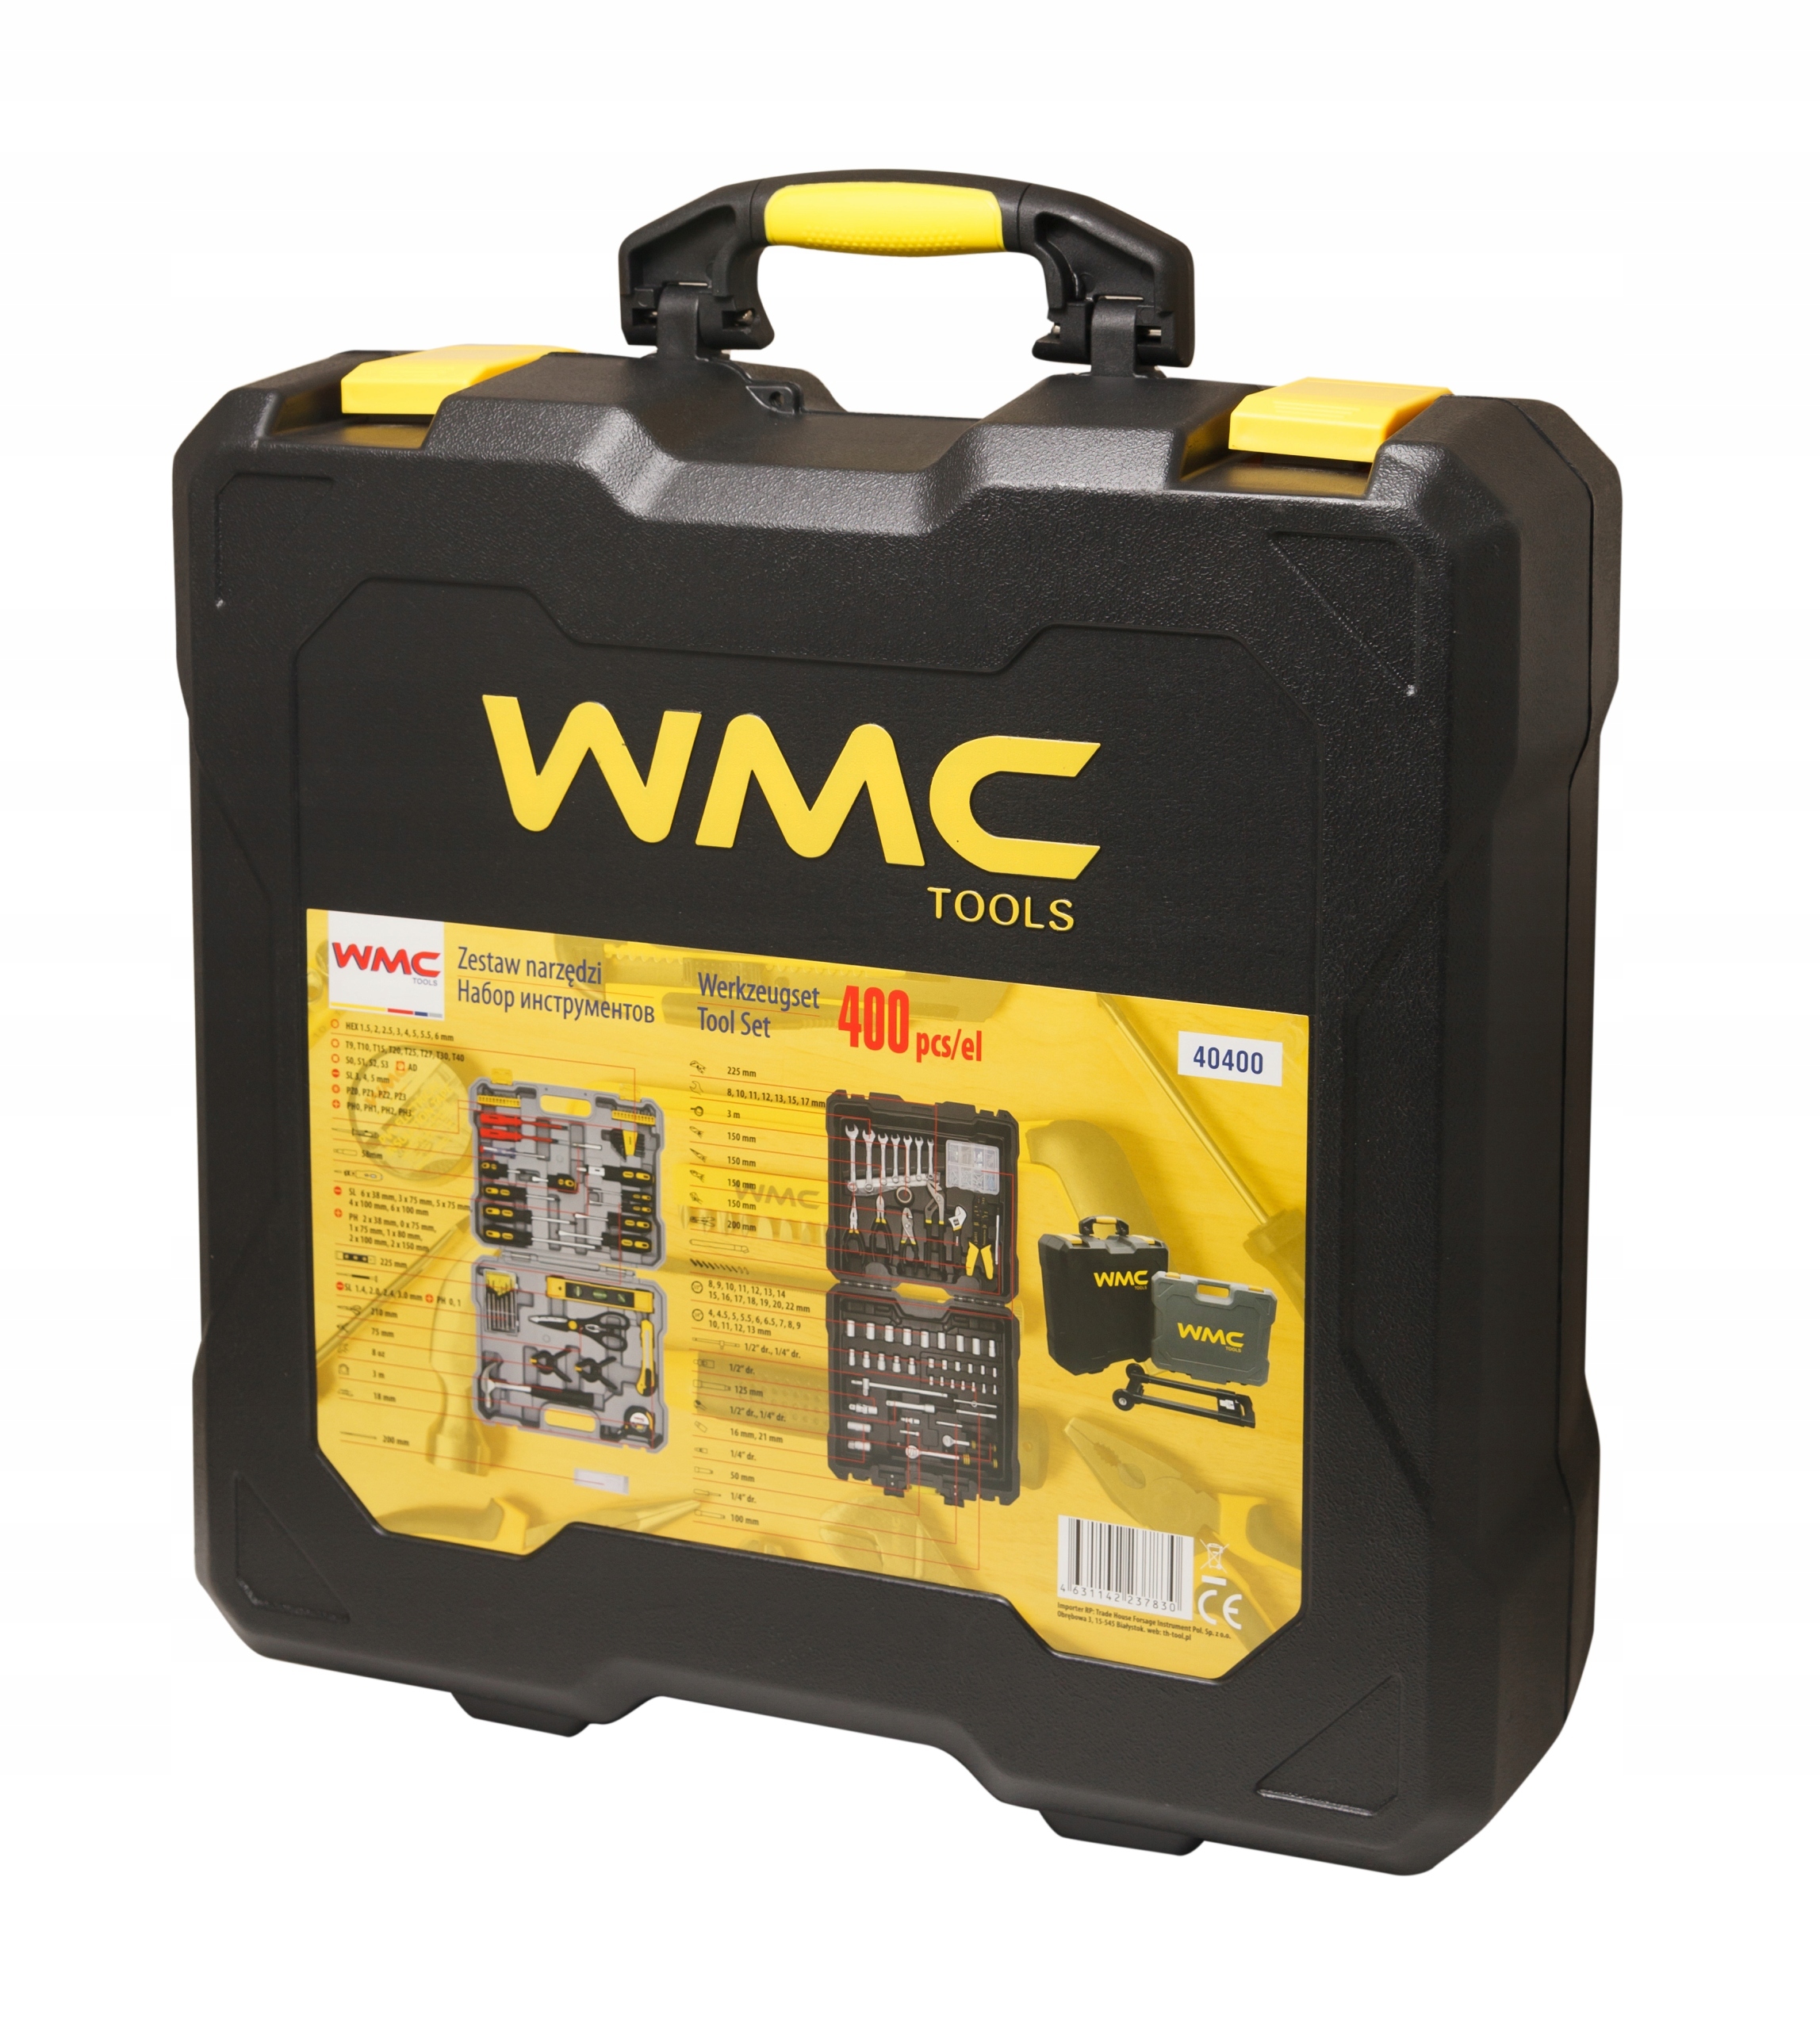 Набор wmc tools. WMC набор инструментов 400. Набор инструментов WMC желтый. WMC Tools фото этикетки. WMC набор инструментов 400 отзывы.